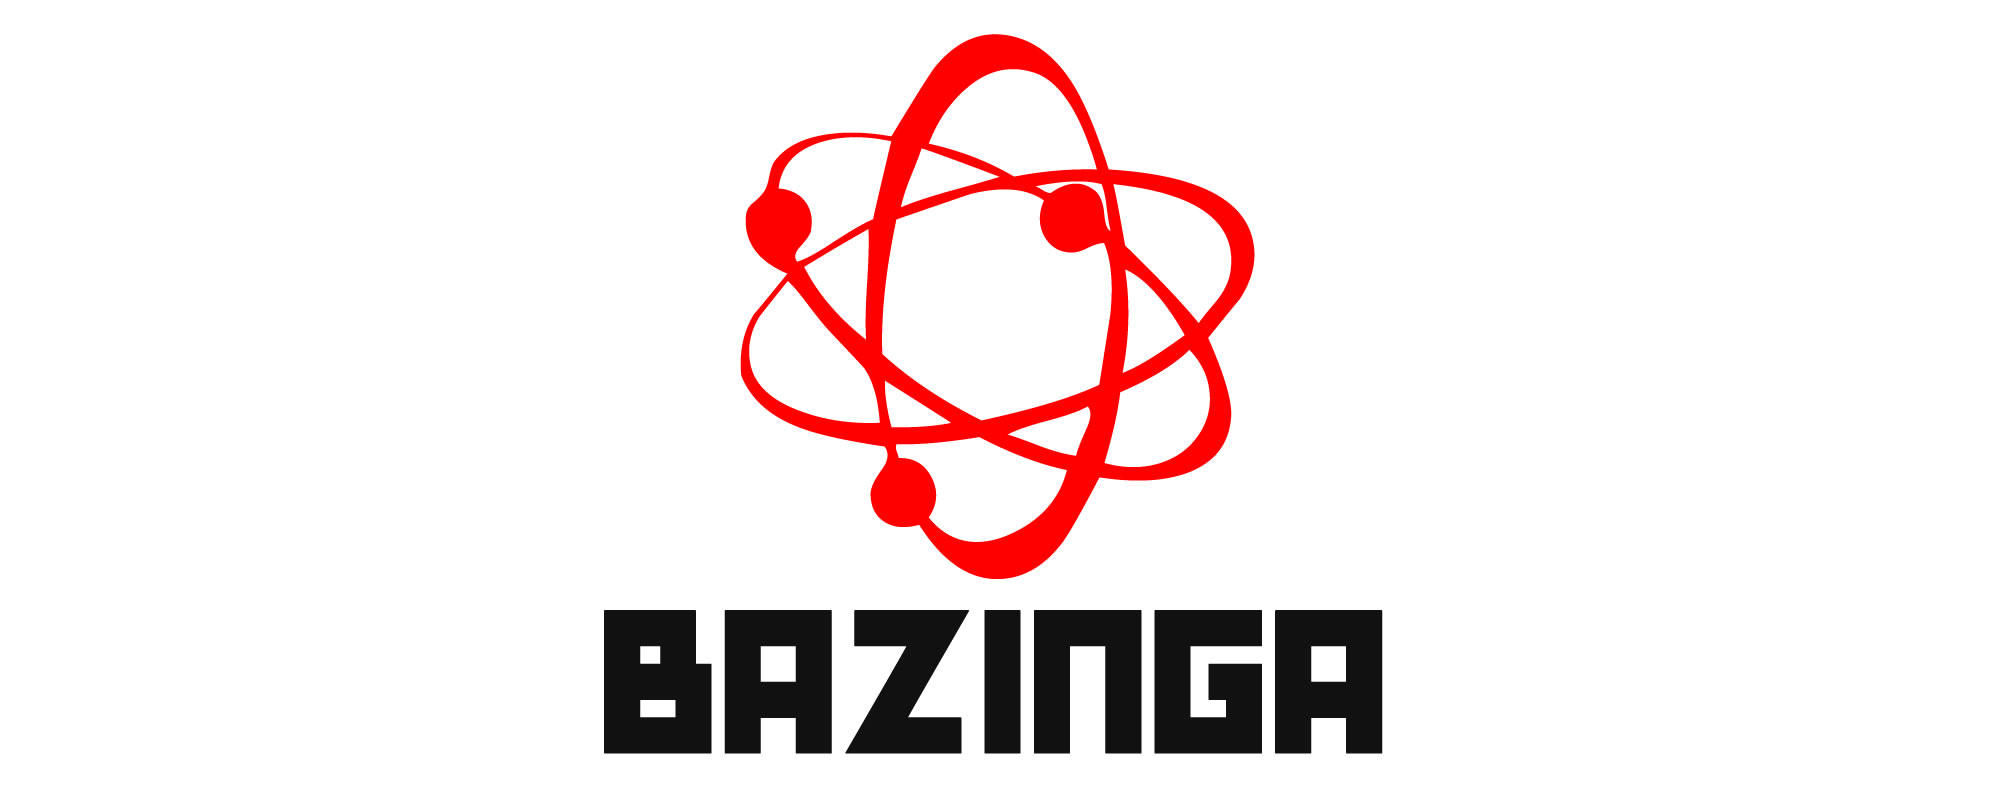 bazinga-atom.jpg